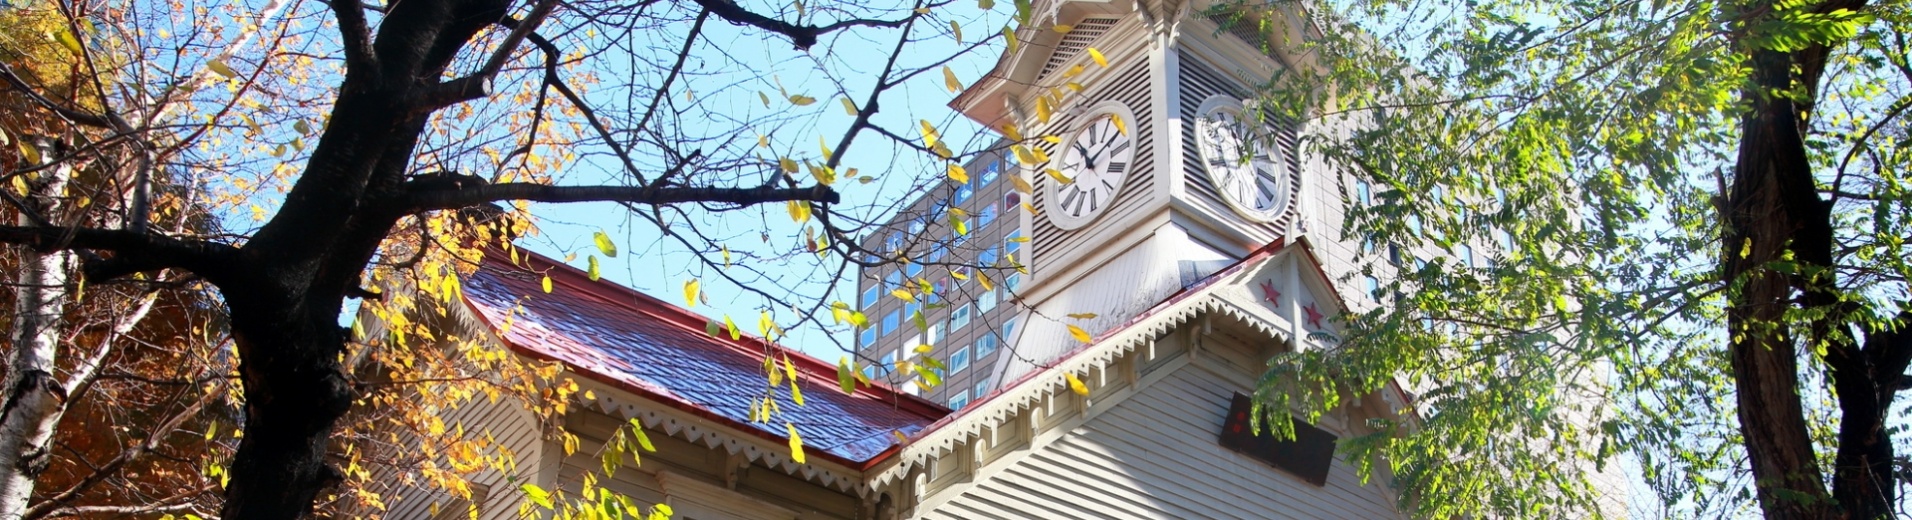 Tour de l'horloge, ville de Sapporo